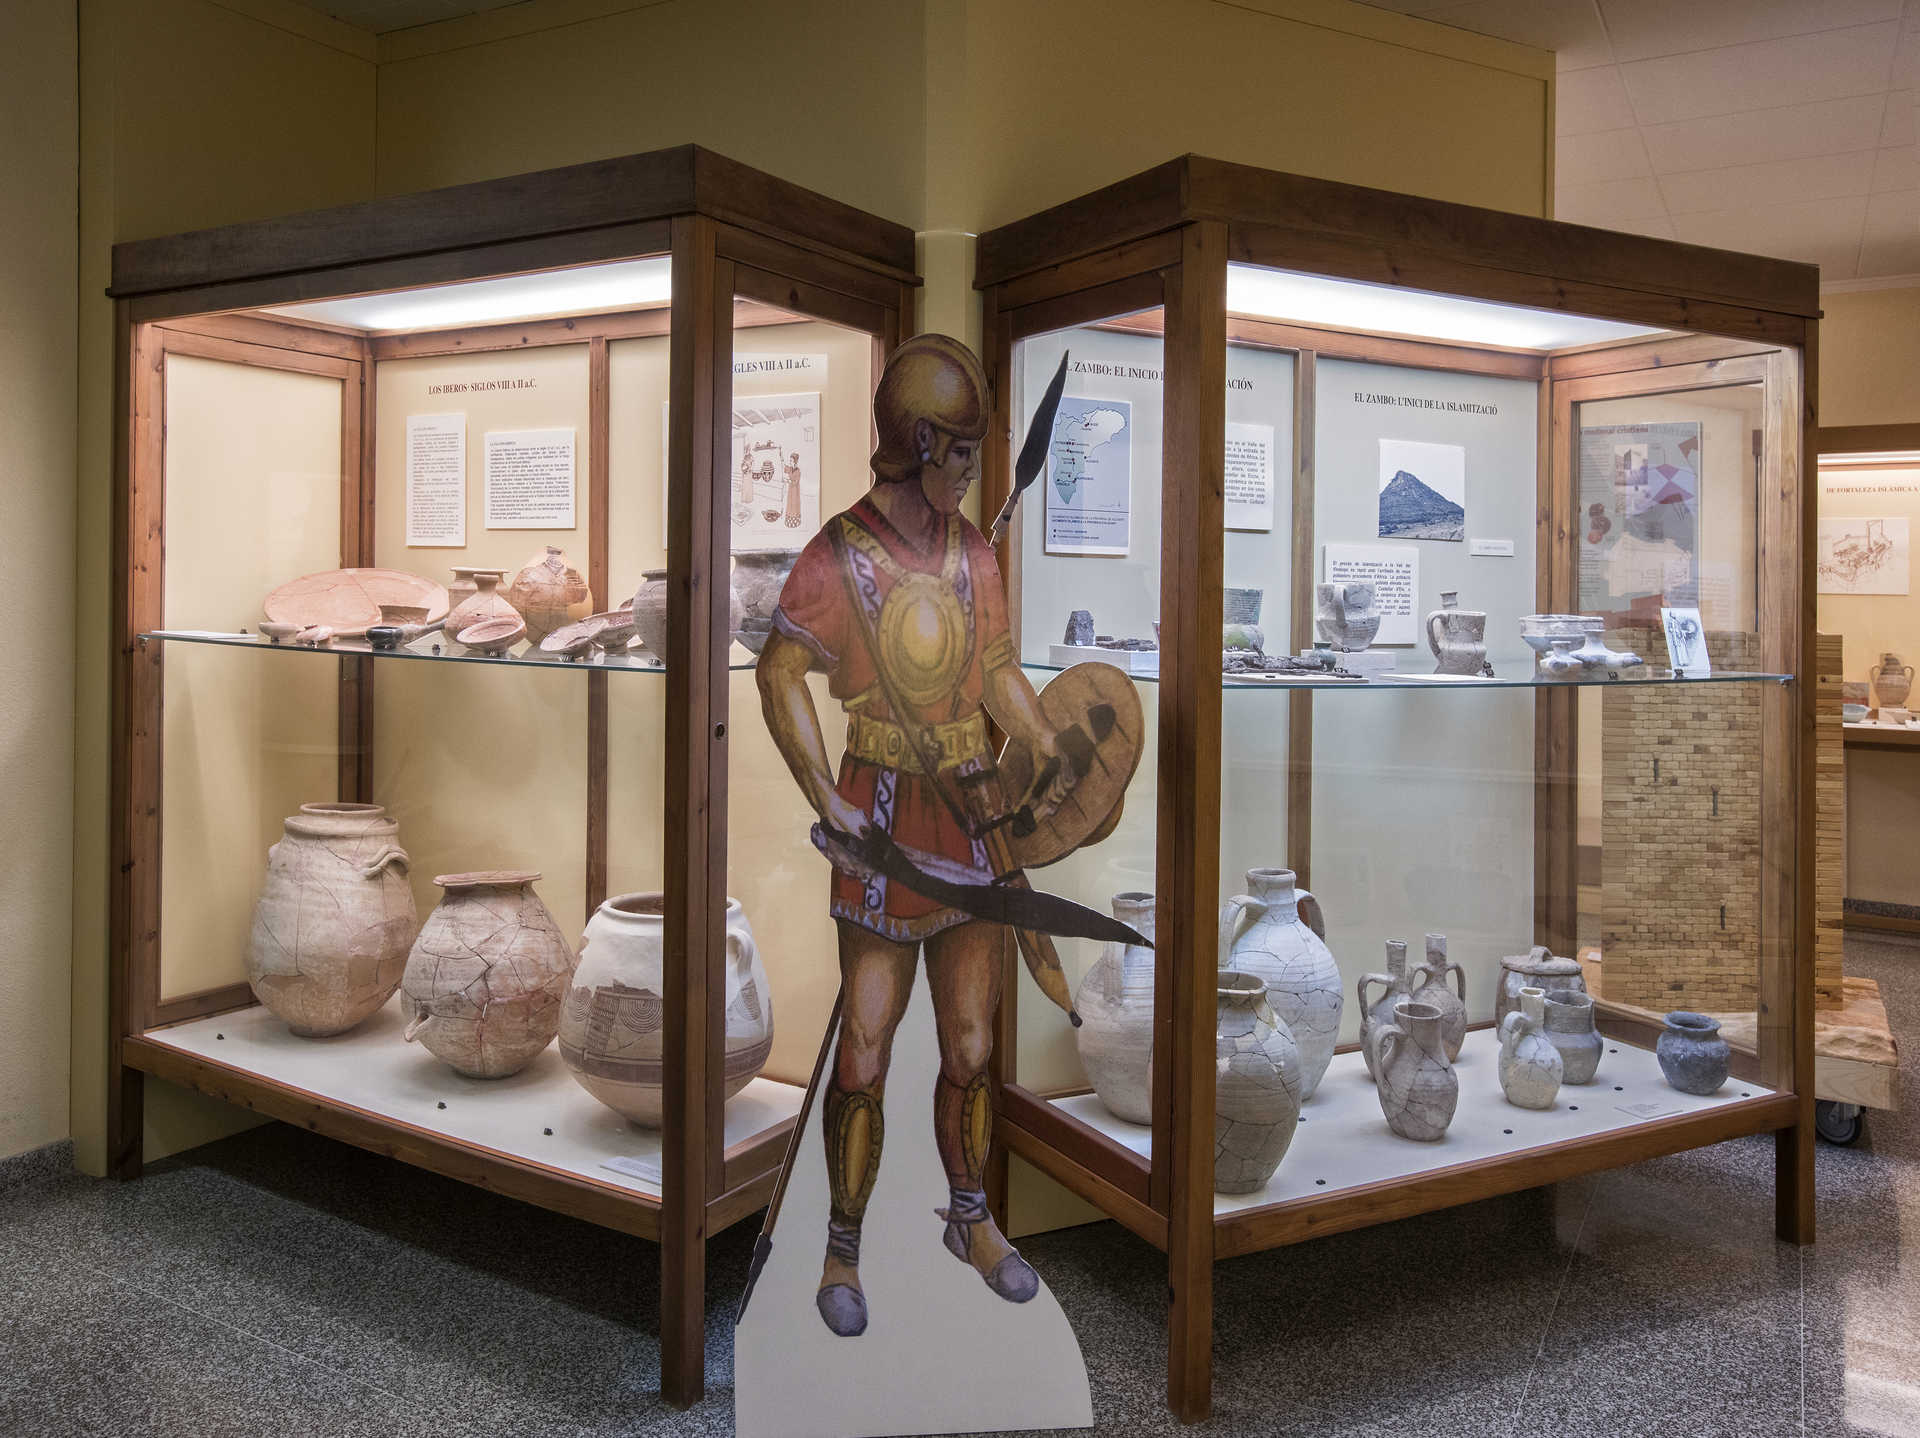 Museu Arqueològic i Paleontològic de Novelda